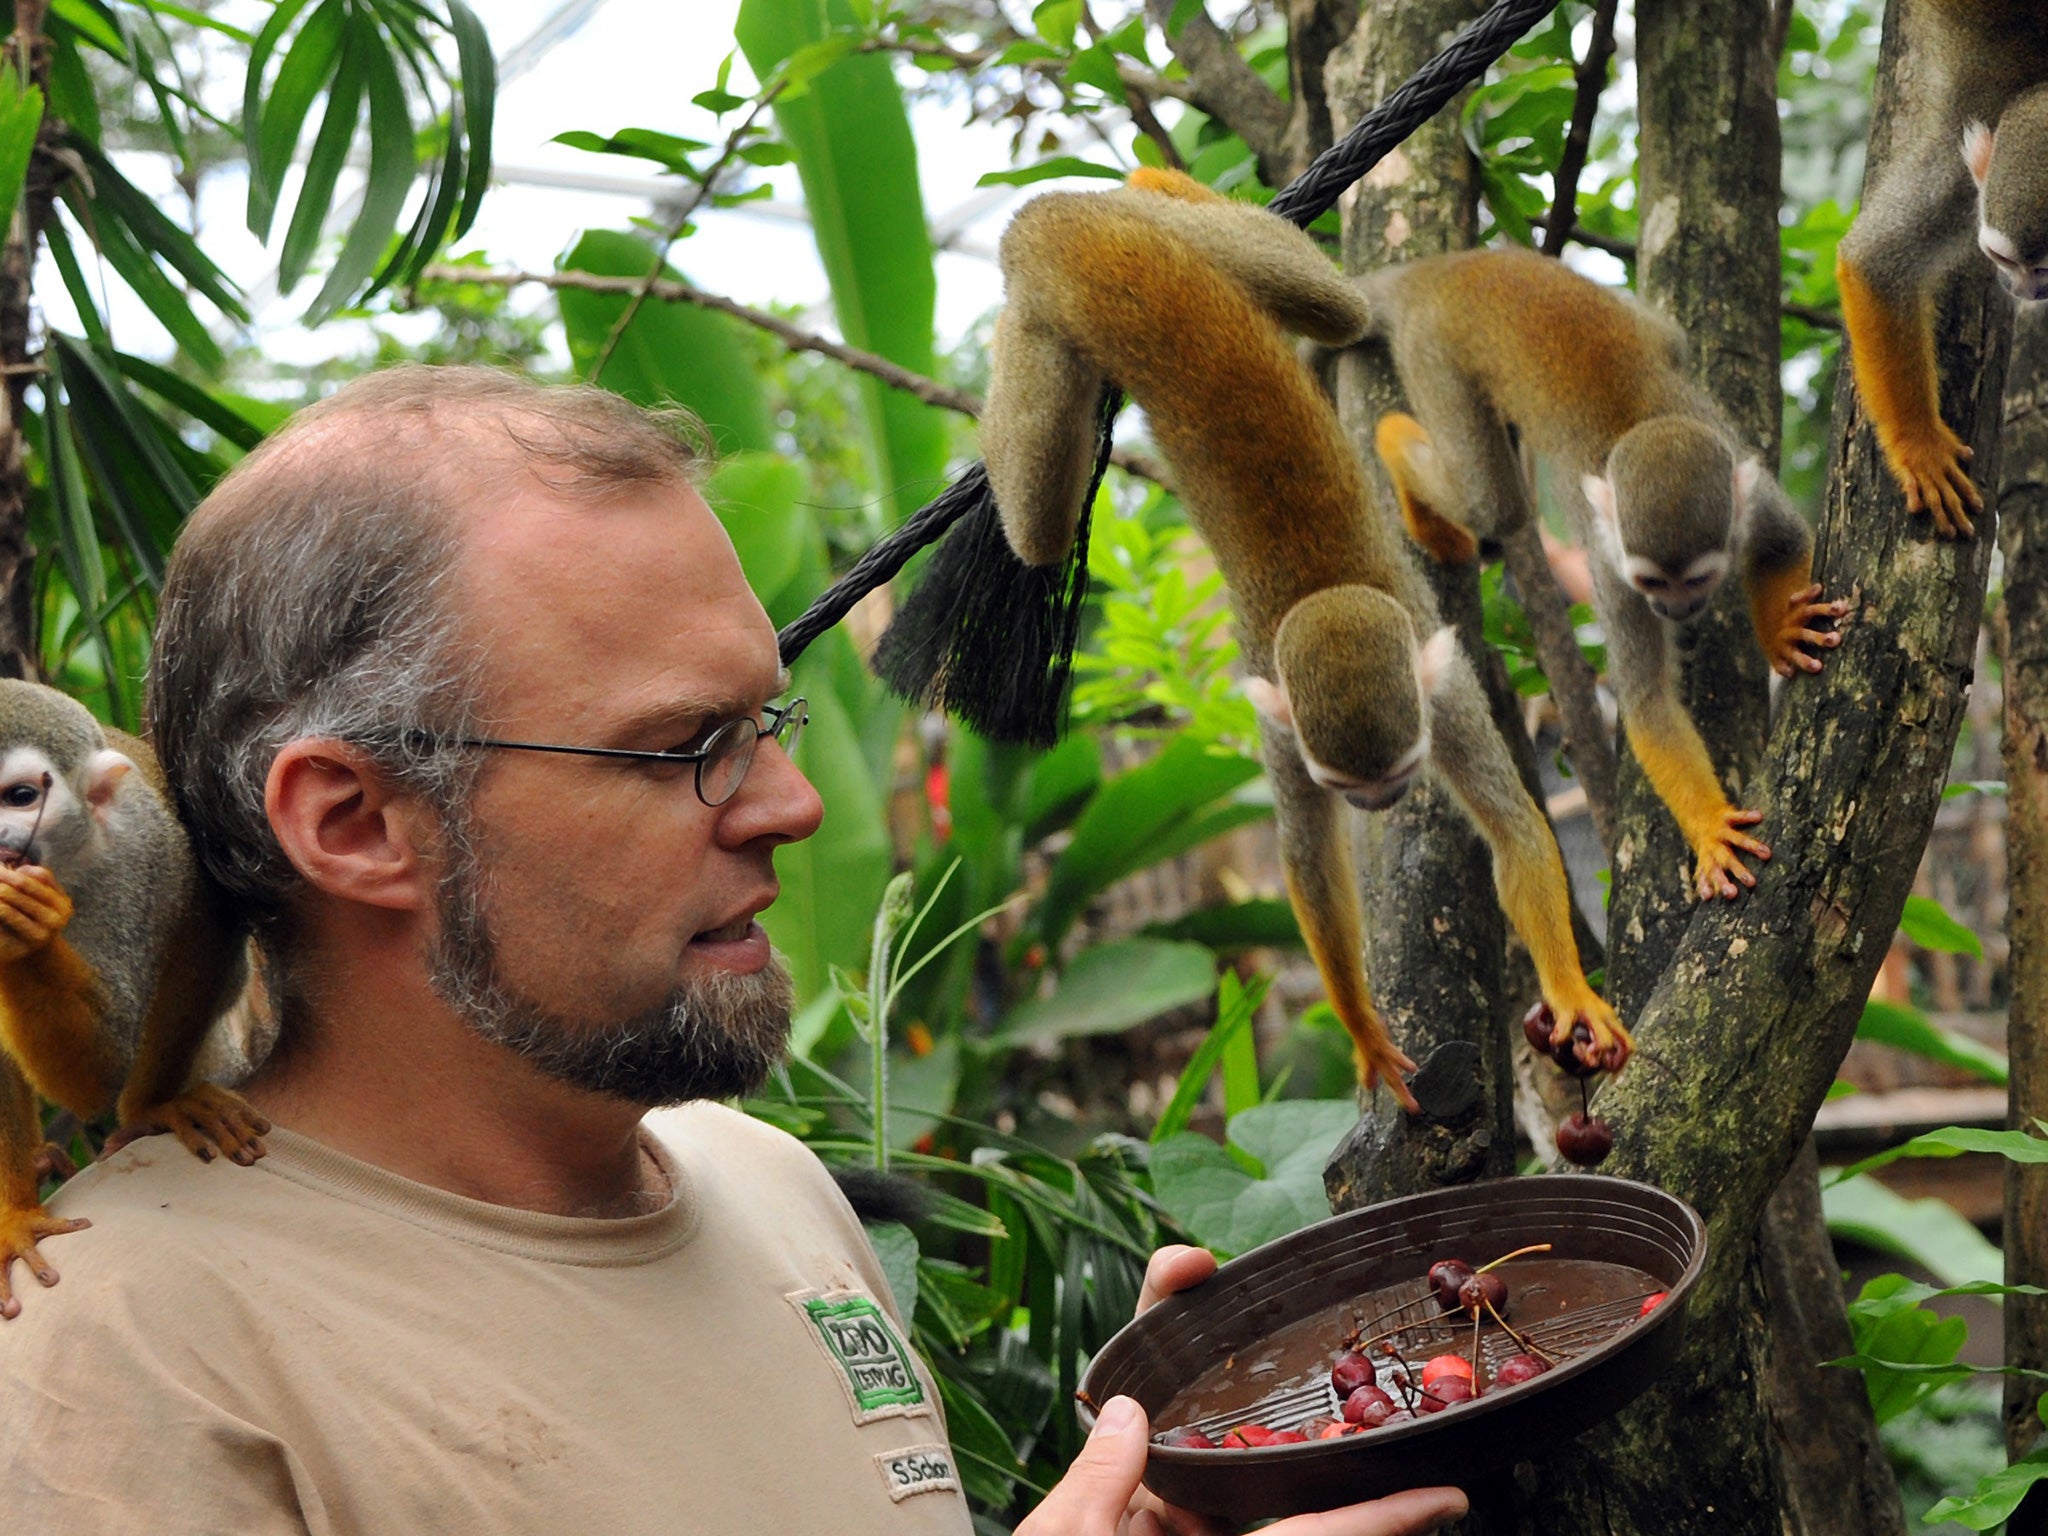 A zoologist works alongside squirrel monkeys